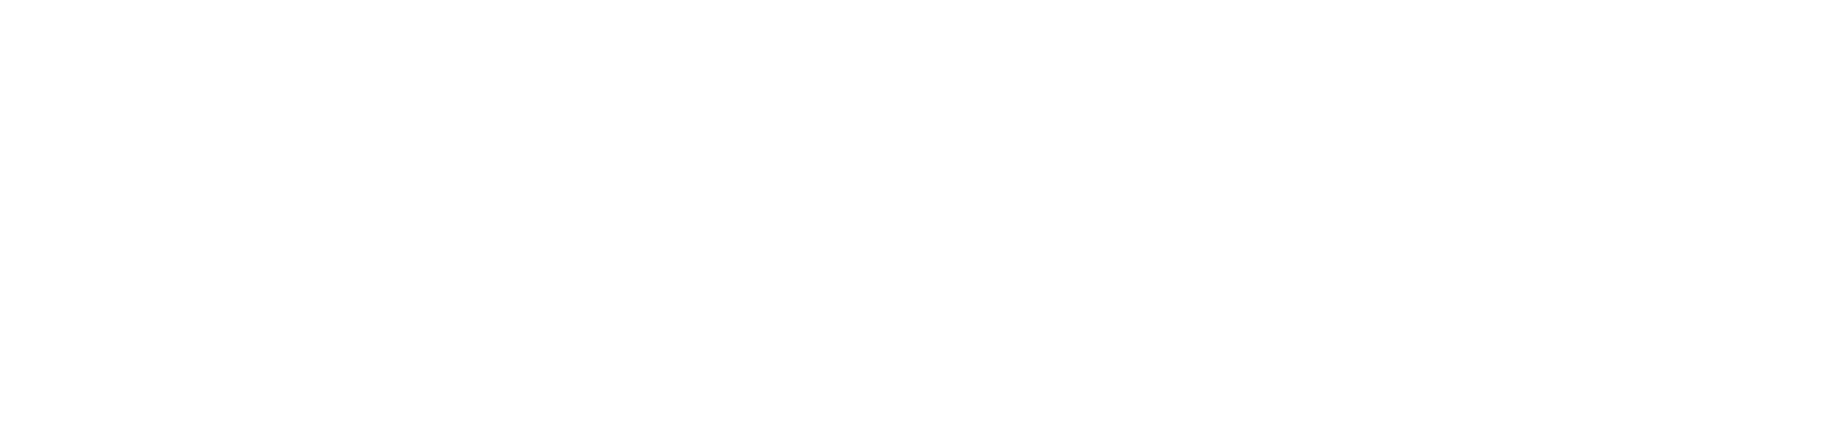 俳句は日本で生まれた短かい詩です。今、俳句は世界50カ国以上で愛され広がっている世界文学となりました。松尾西蕉は俳句の始祖であり、その歴史の中で最も重要な俳句詩人です。これは、松尾芭蕉の俳句を三つに分けて、混ぜて、組み合わせる、新しいカードゲームです。あなたもこれで遊んで日本文化を体験しませんか。